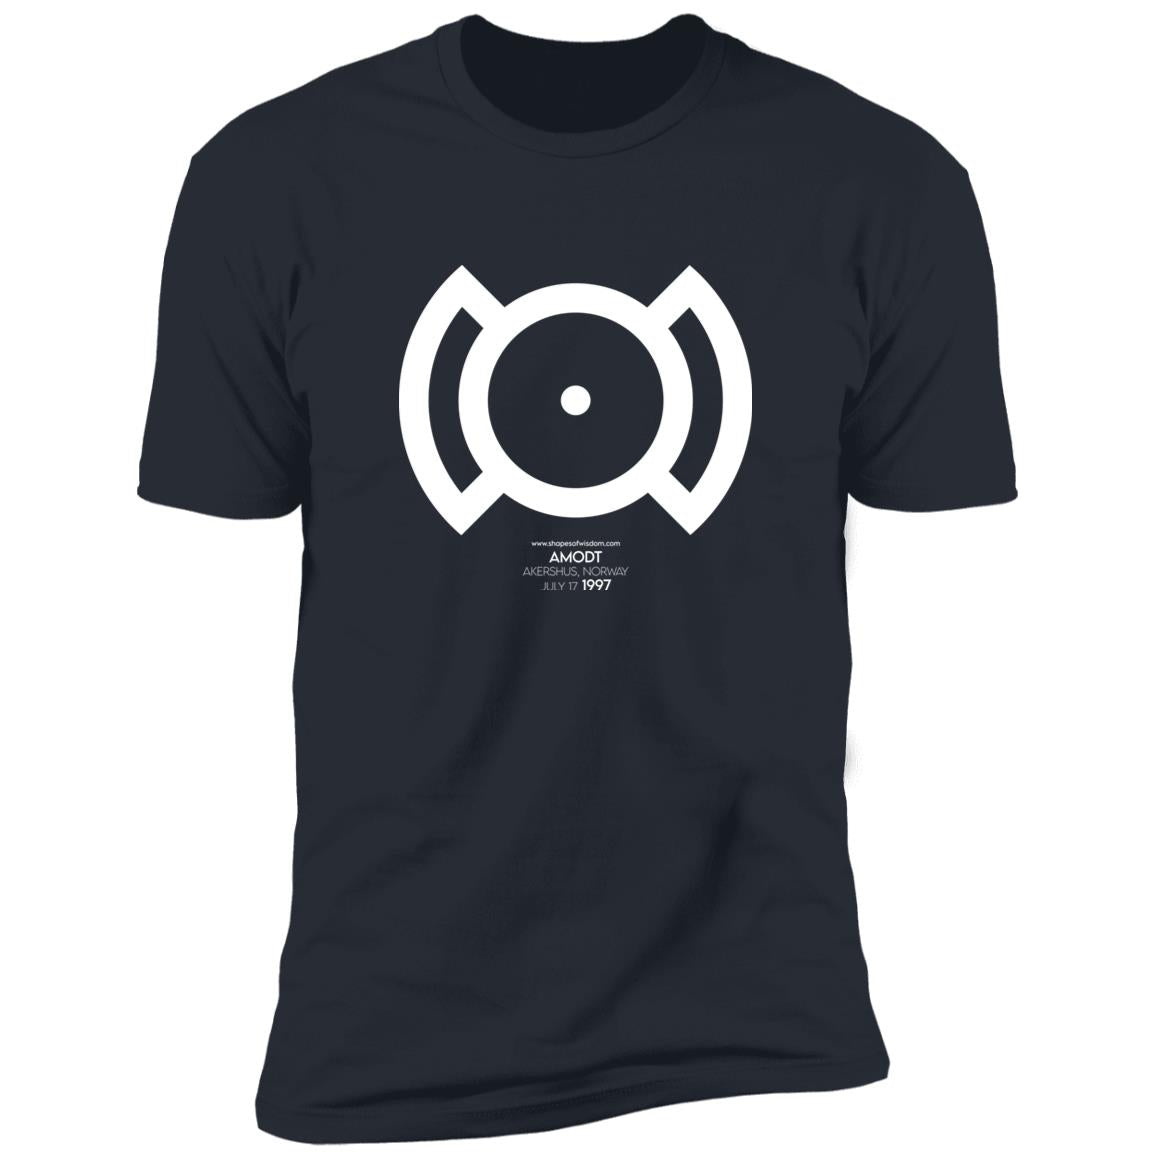 Crop Circle Premium T-Shirt - Amodt